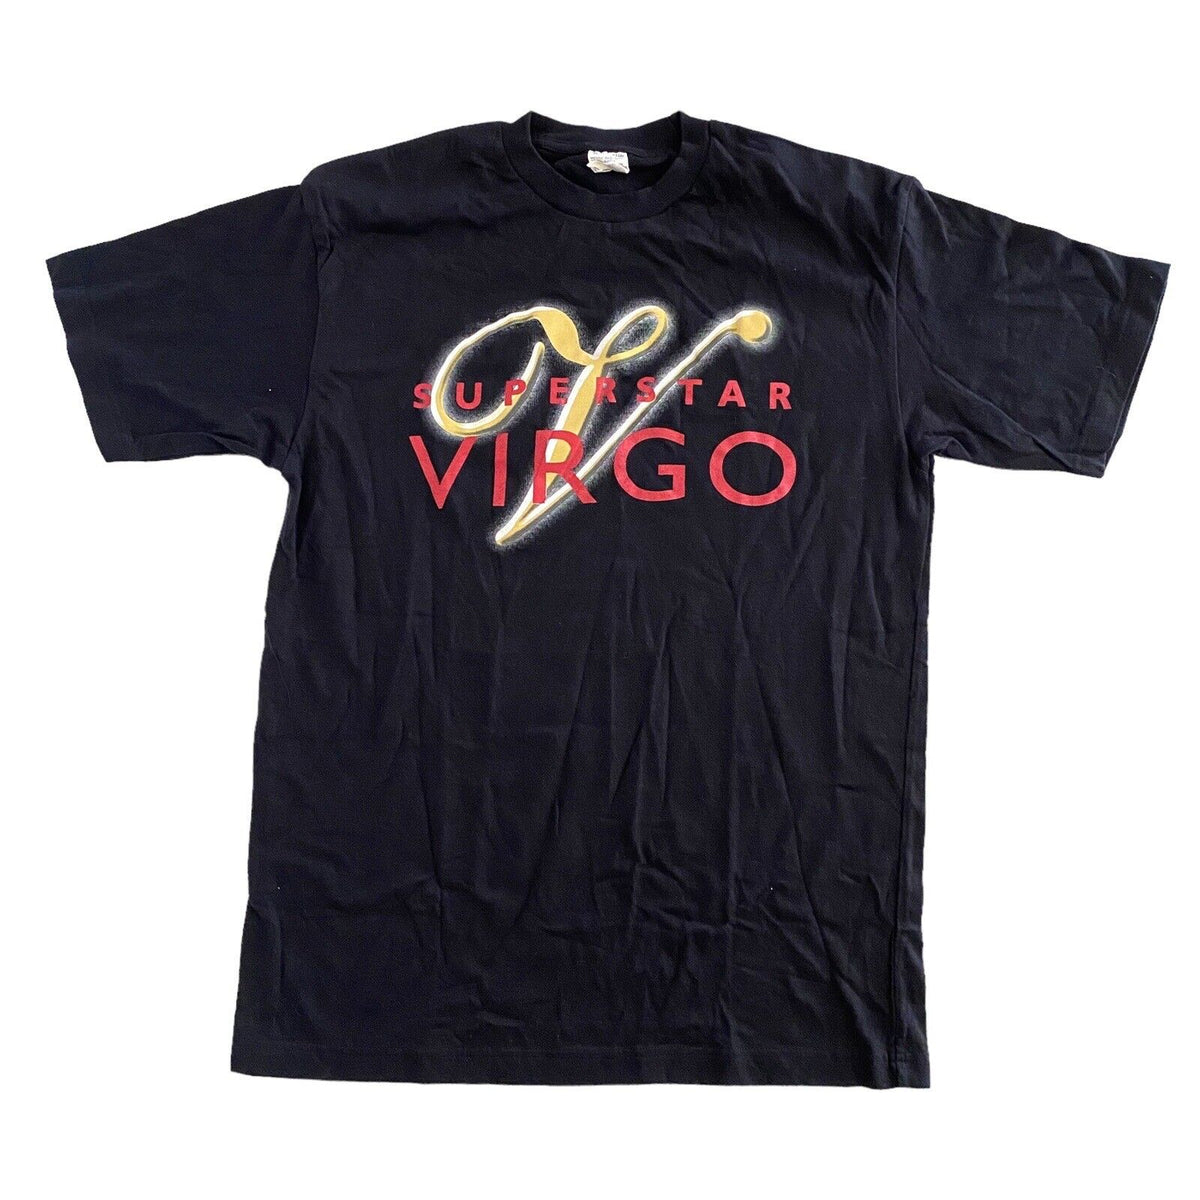 Superstar Virgo Astrology Vintage Mens T-Shirt - Large